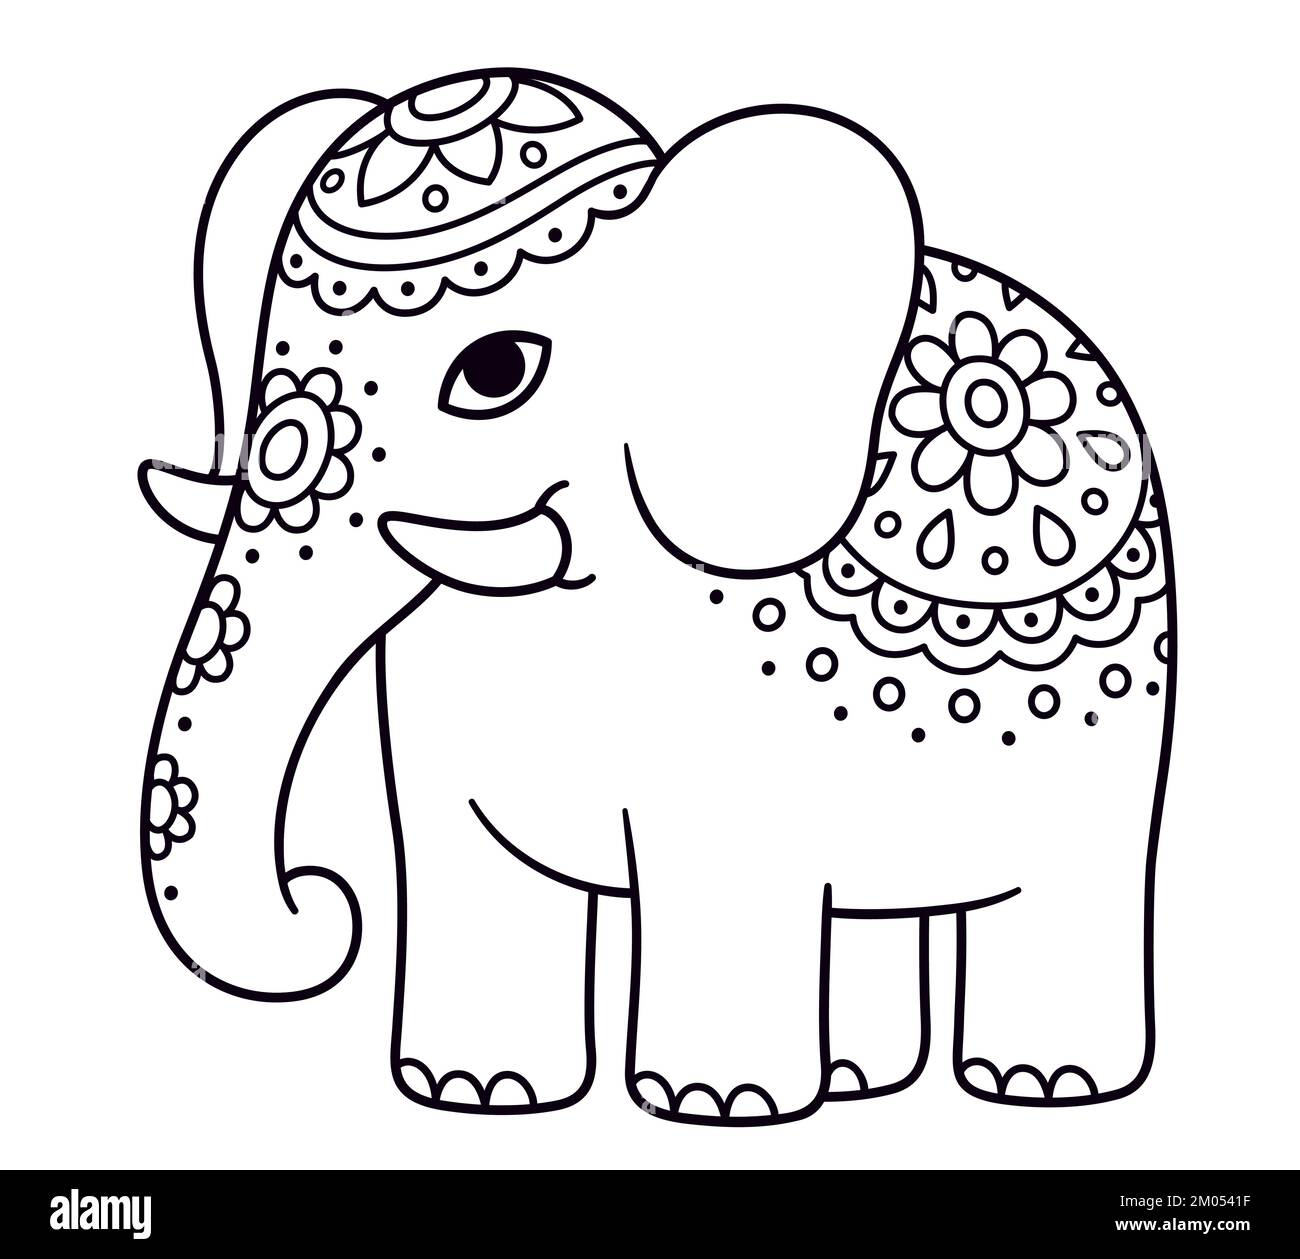 Cute caricatura adornada de elefante. Elefante indio con flores pintadas. Dibujo en blanco y negro para colorear. Ilustración vectorial de imágenes prediseñadas. Ilustración del Vector